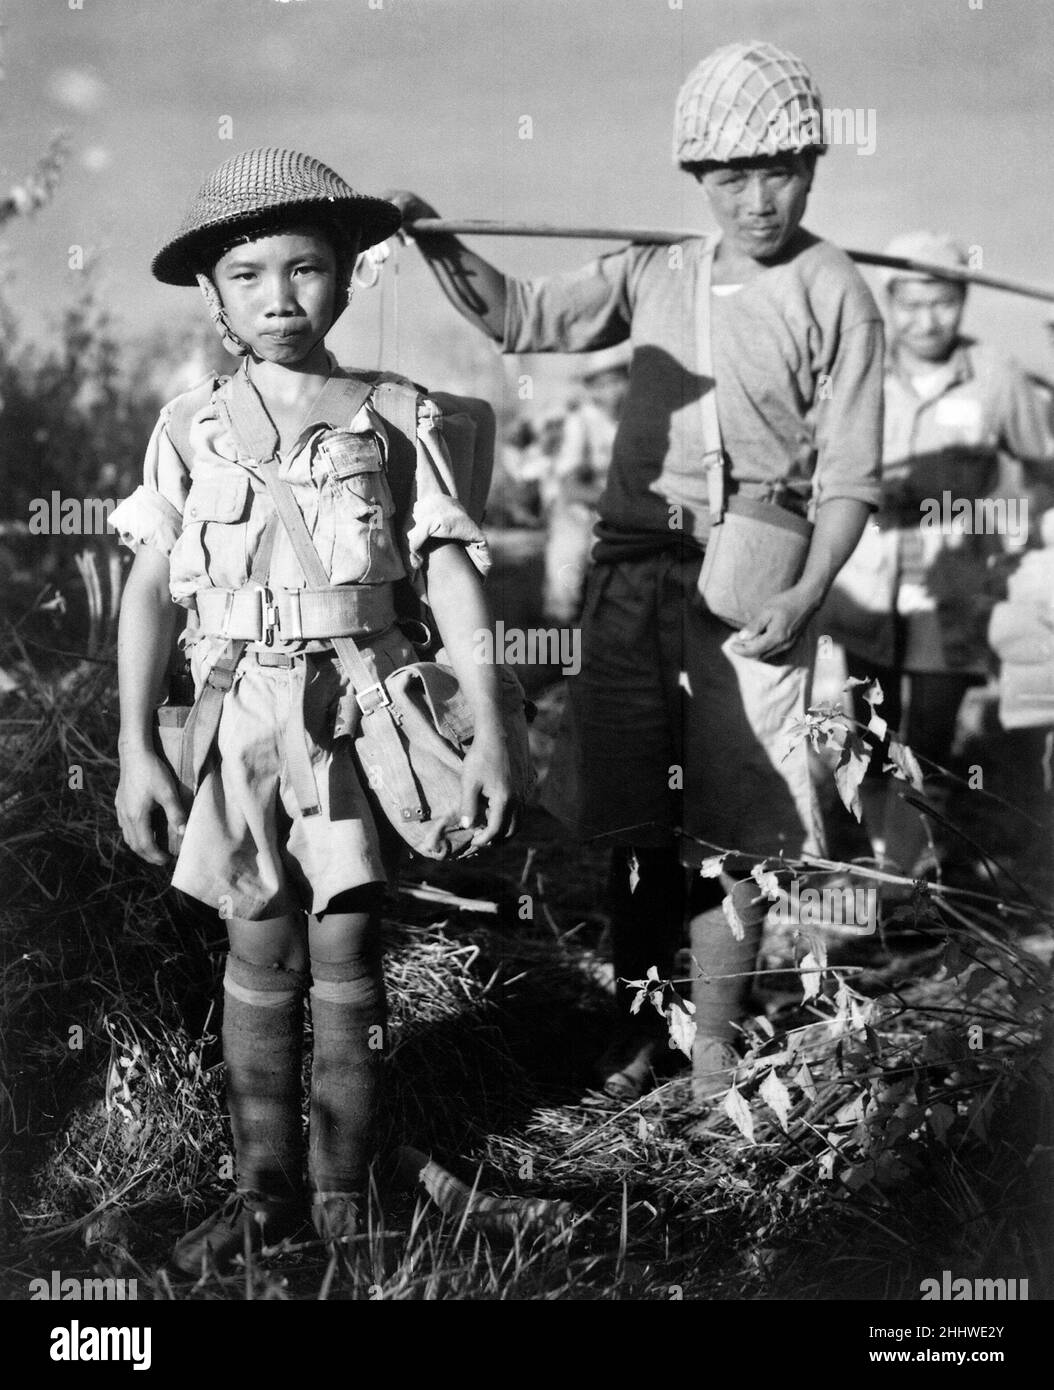 Porträt eines 10yr-jährigen chinesischen Kindersoldaten, Mitglied einer Armeedivision, der ein Flugzeug besteigen sollte, das sie nach der Eroberung des Flugplatzes Myitkyina in Burma unter dem Kommando von US-Generalmajor Frank Merrill im Mai 1944 nach China zurückbrachte. Stockfoto